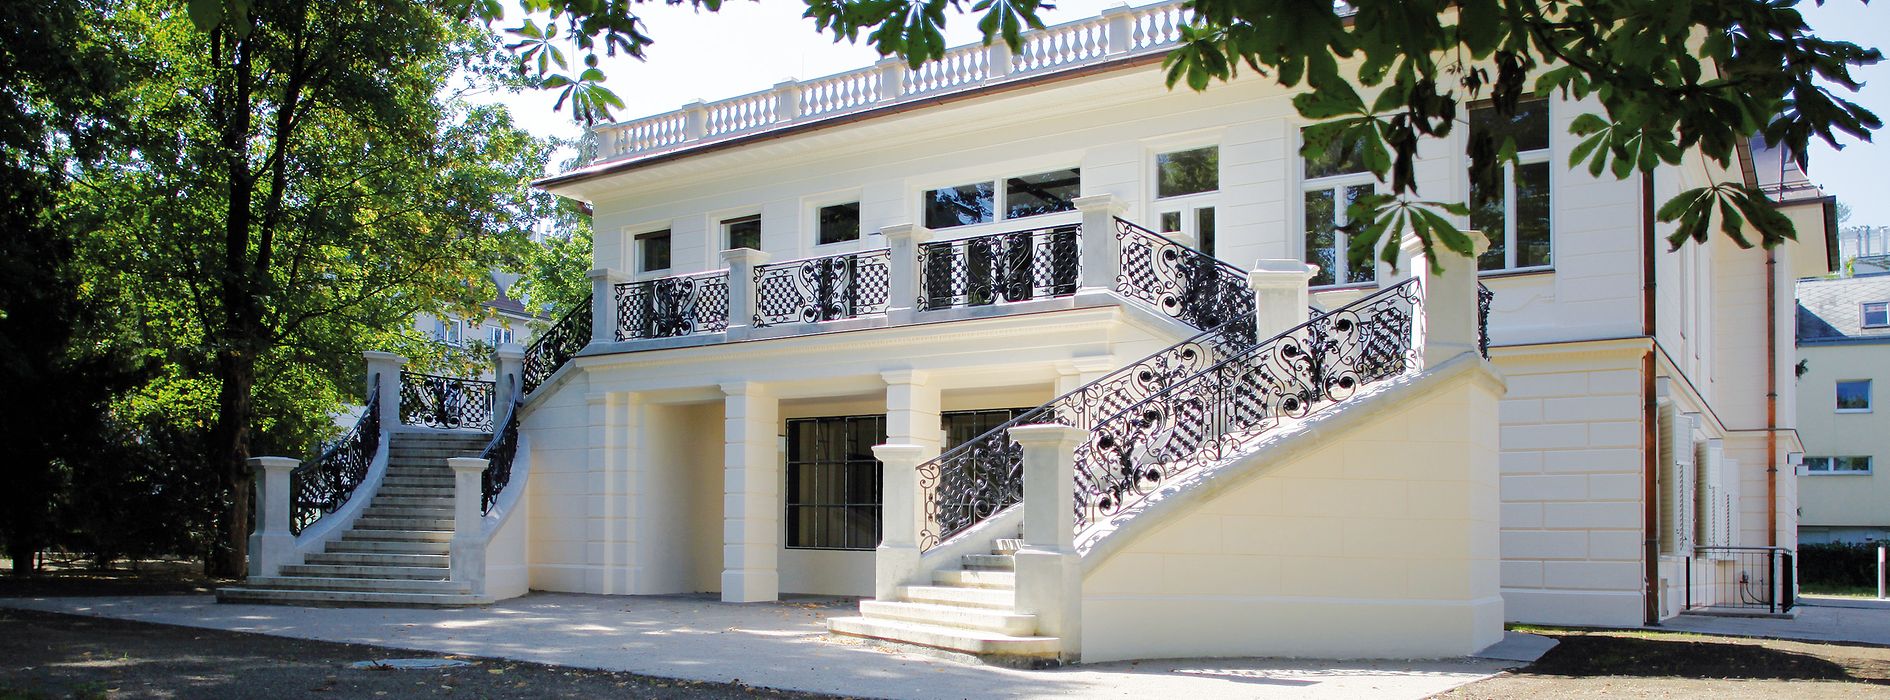 Klimt villa